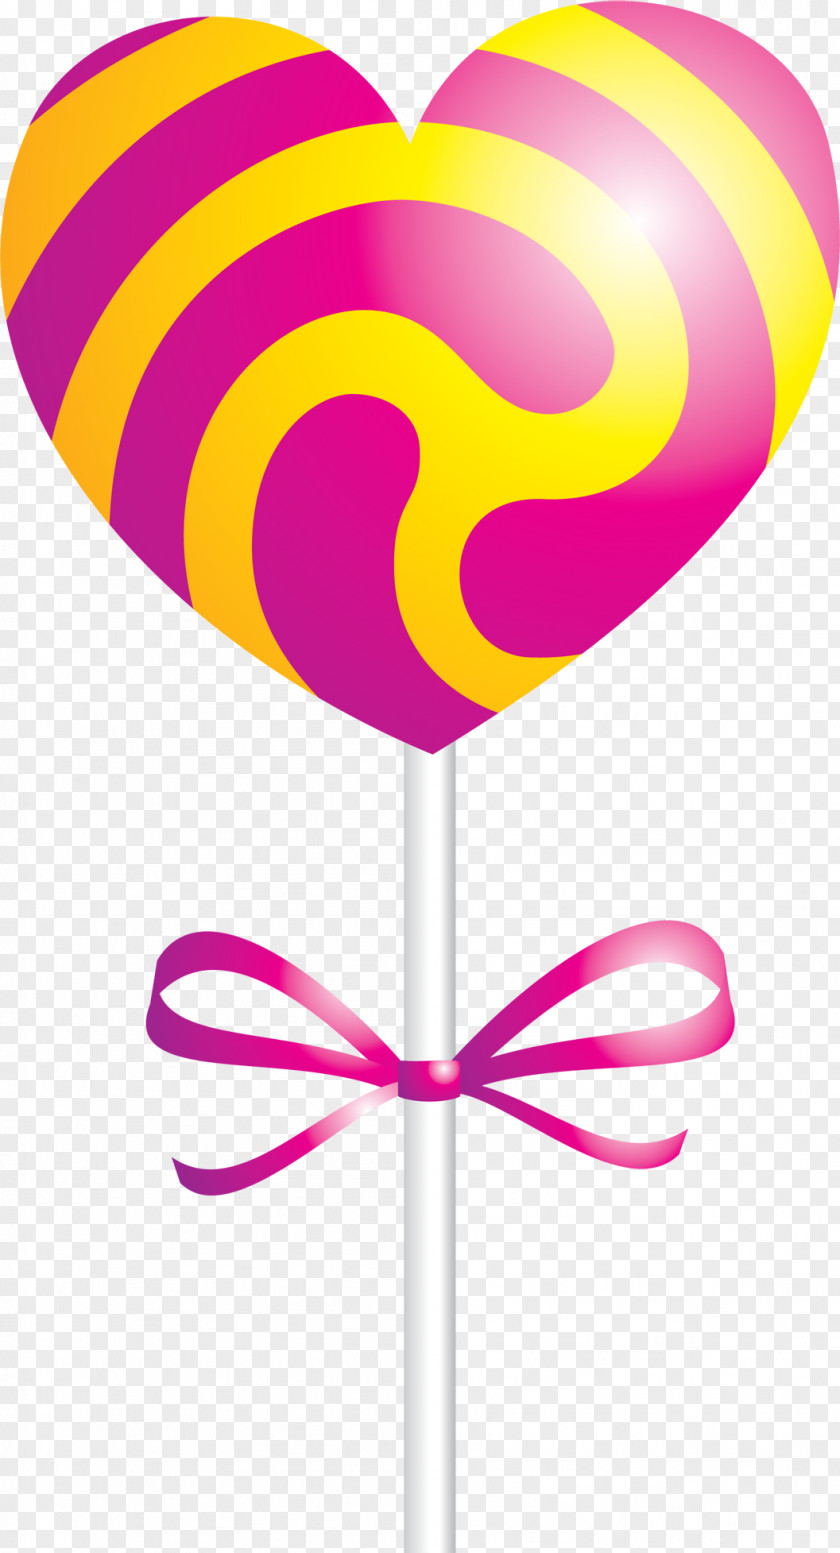 Candy Lollipop Food Clip Art PNG